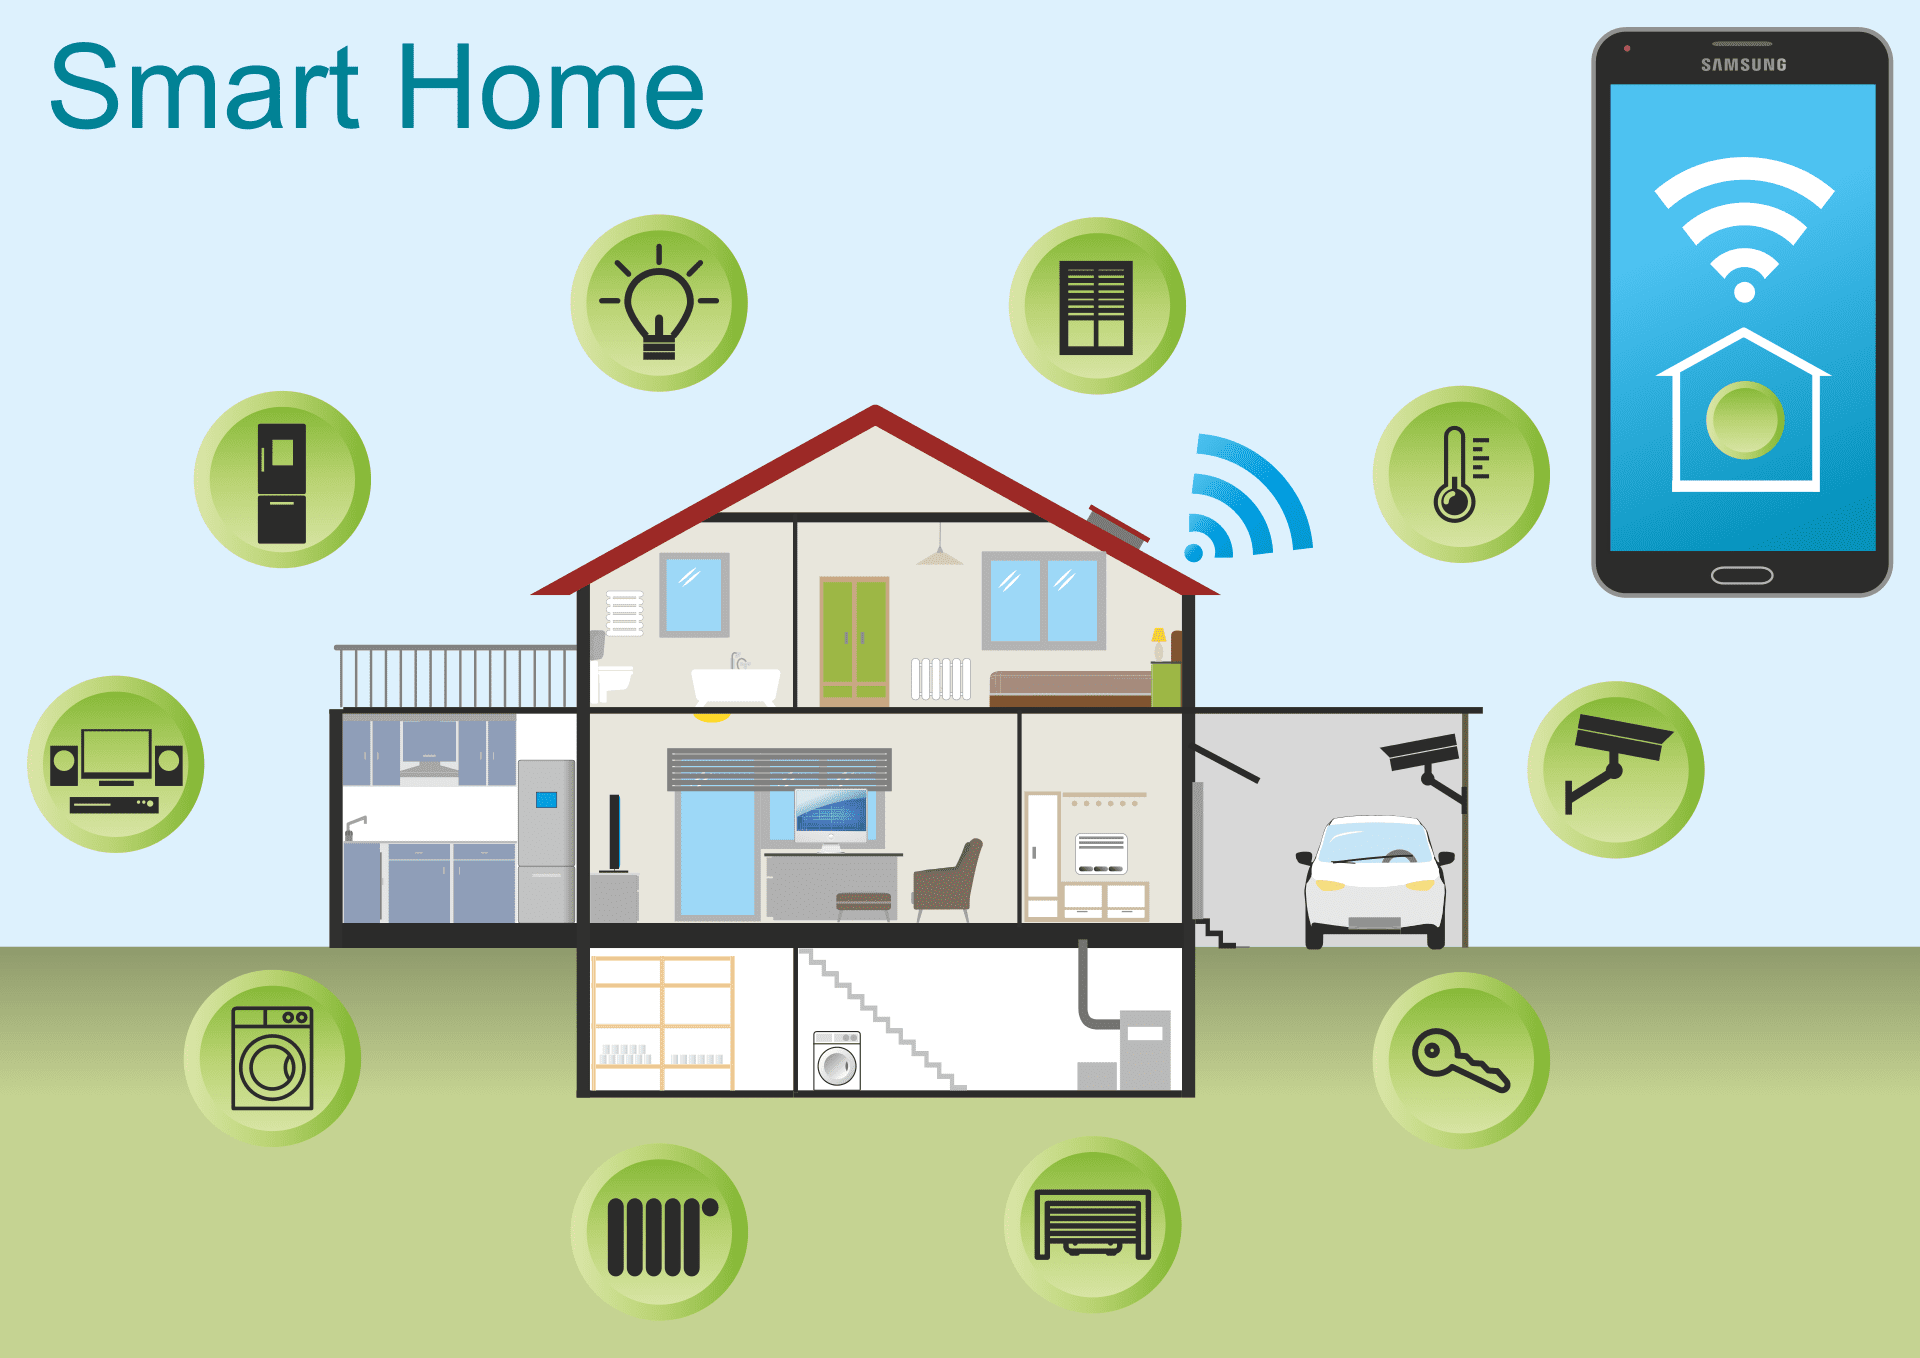 Smart Home - Wohnkomfort durch digitale Vernetzung